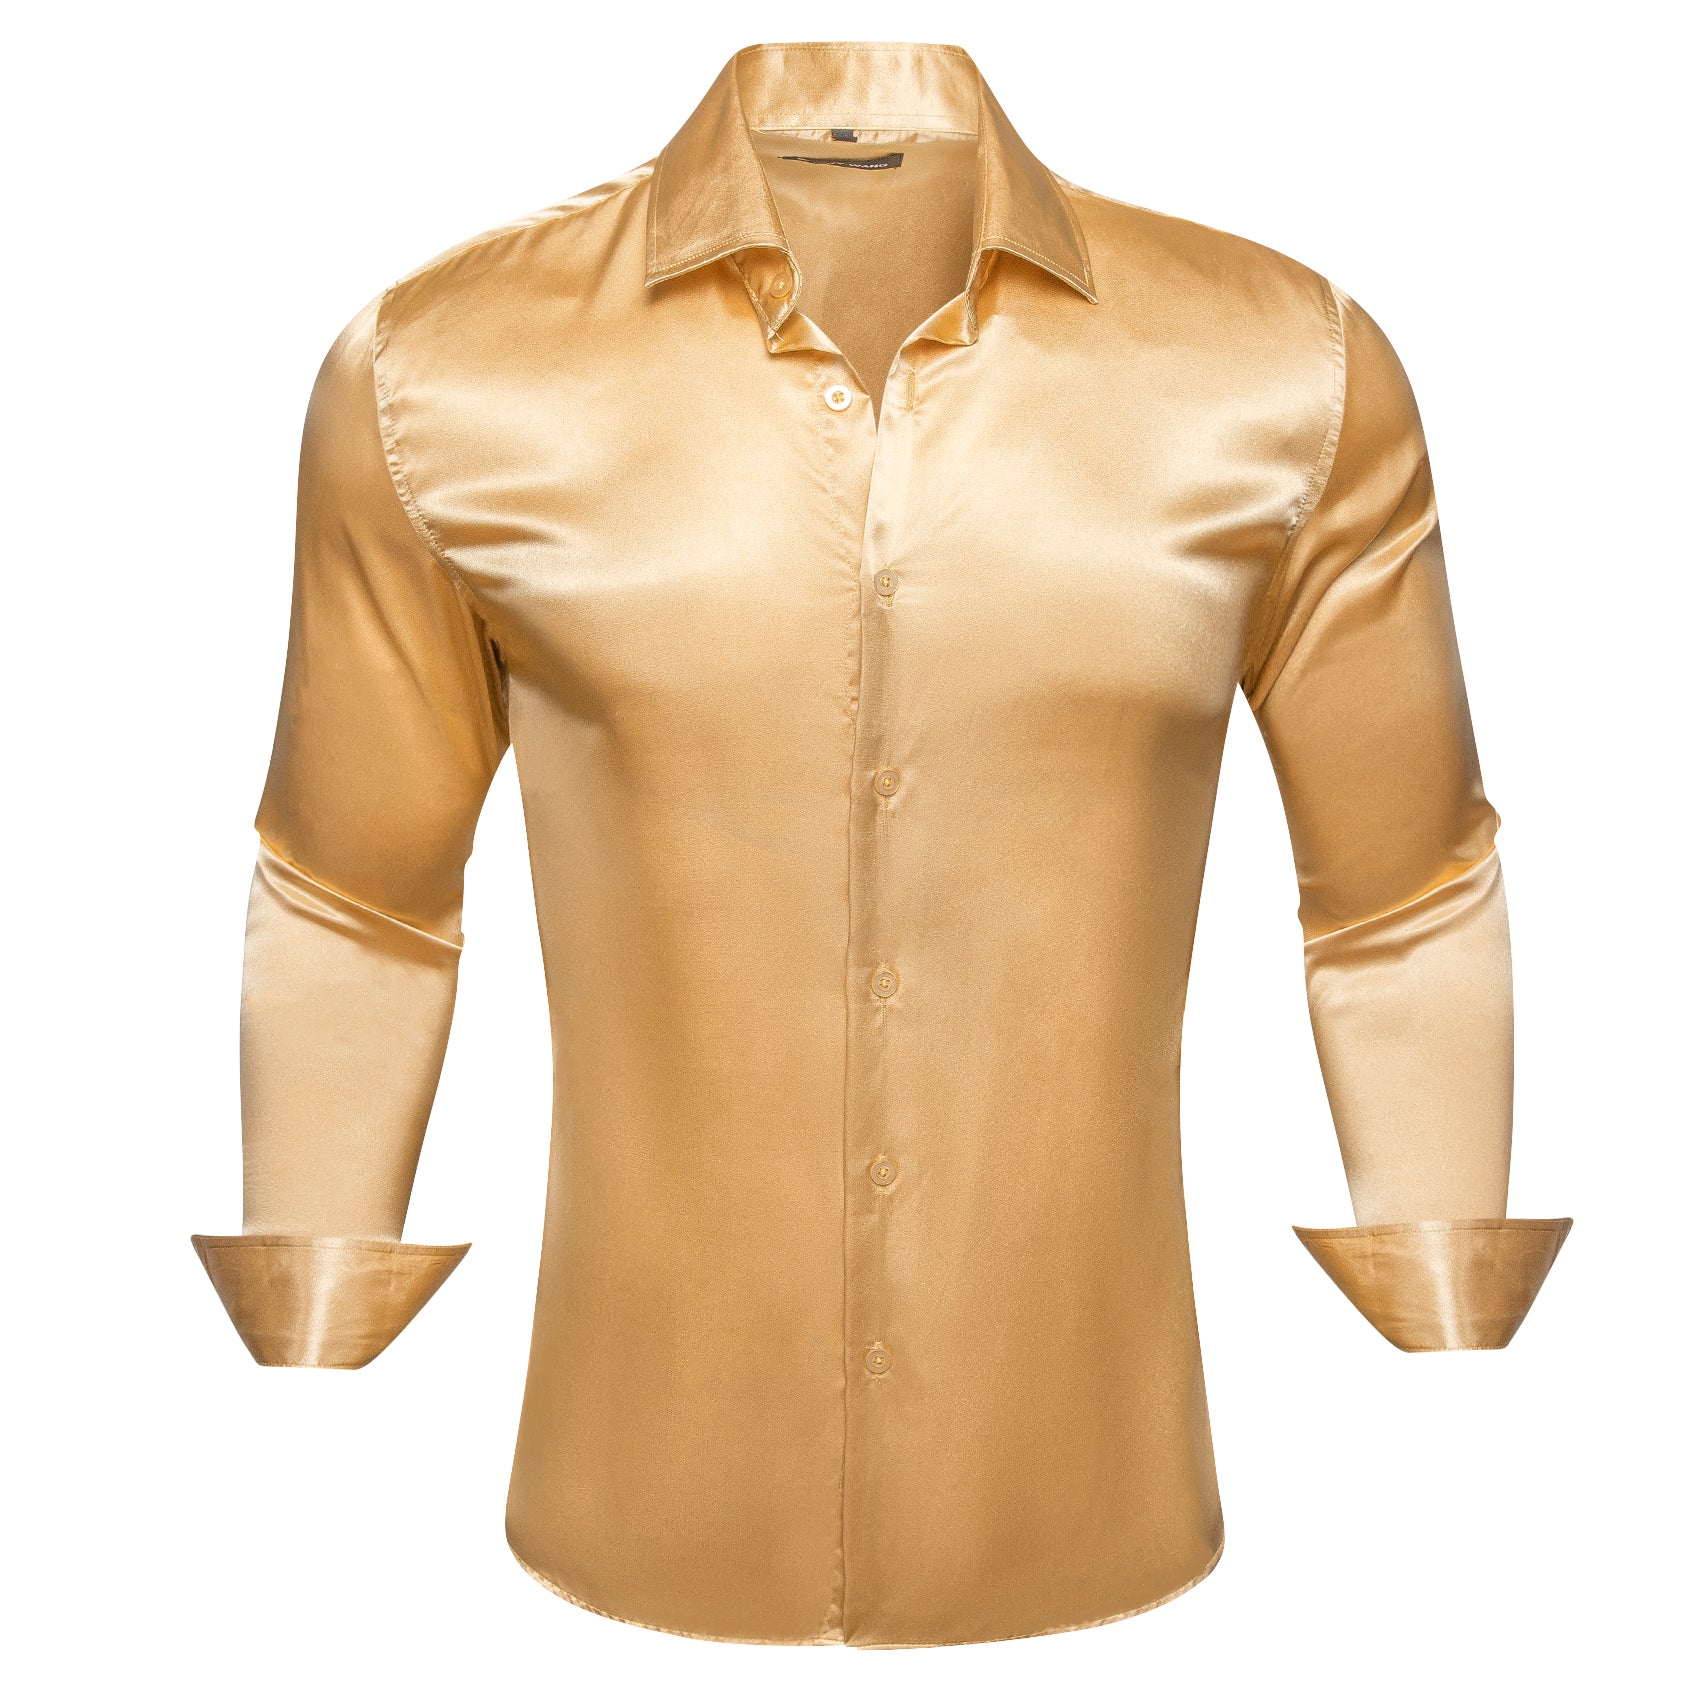 Barry.wang Goldenrod Solid Silk Shirt